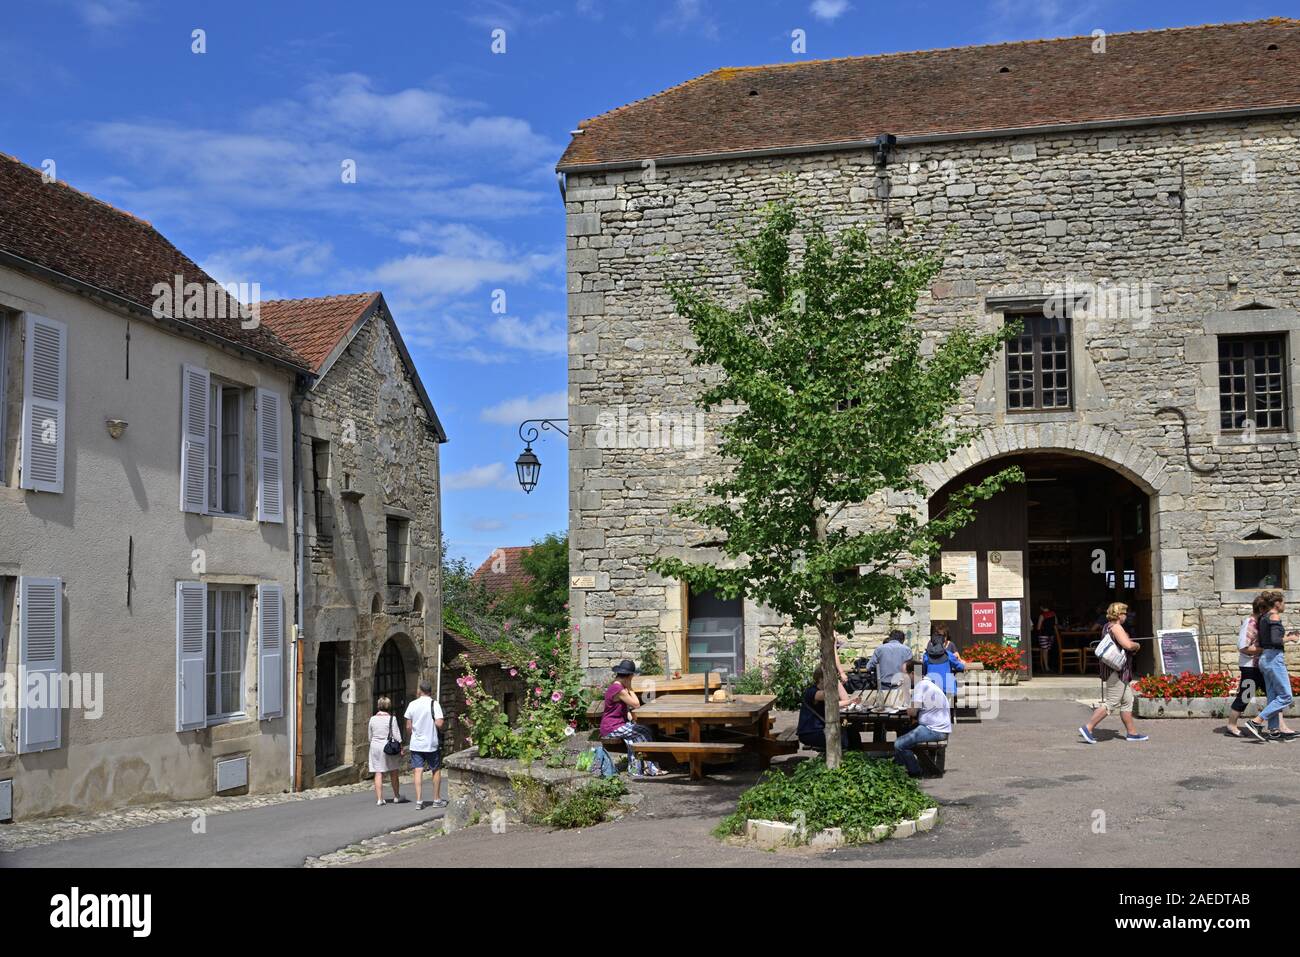 La location originale del film del 2000 "Chocolat" nel pittoresco villaggio di Flavigny sur Ozerain, Cote d'Or FR Foto Stock